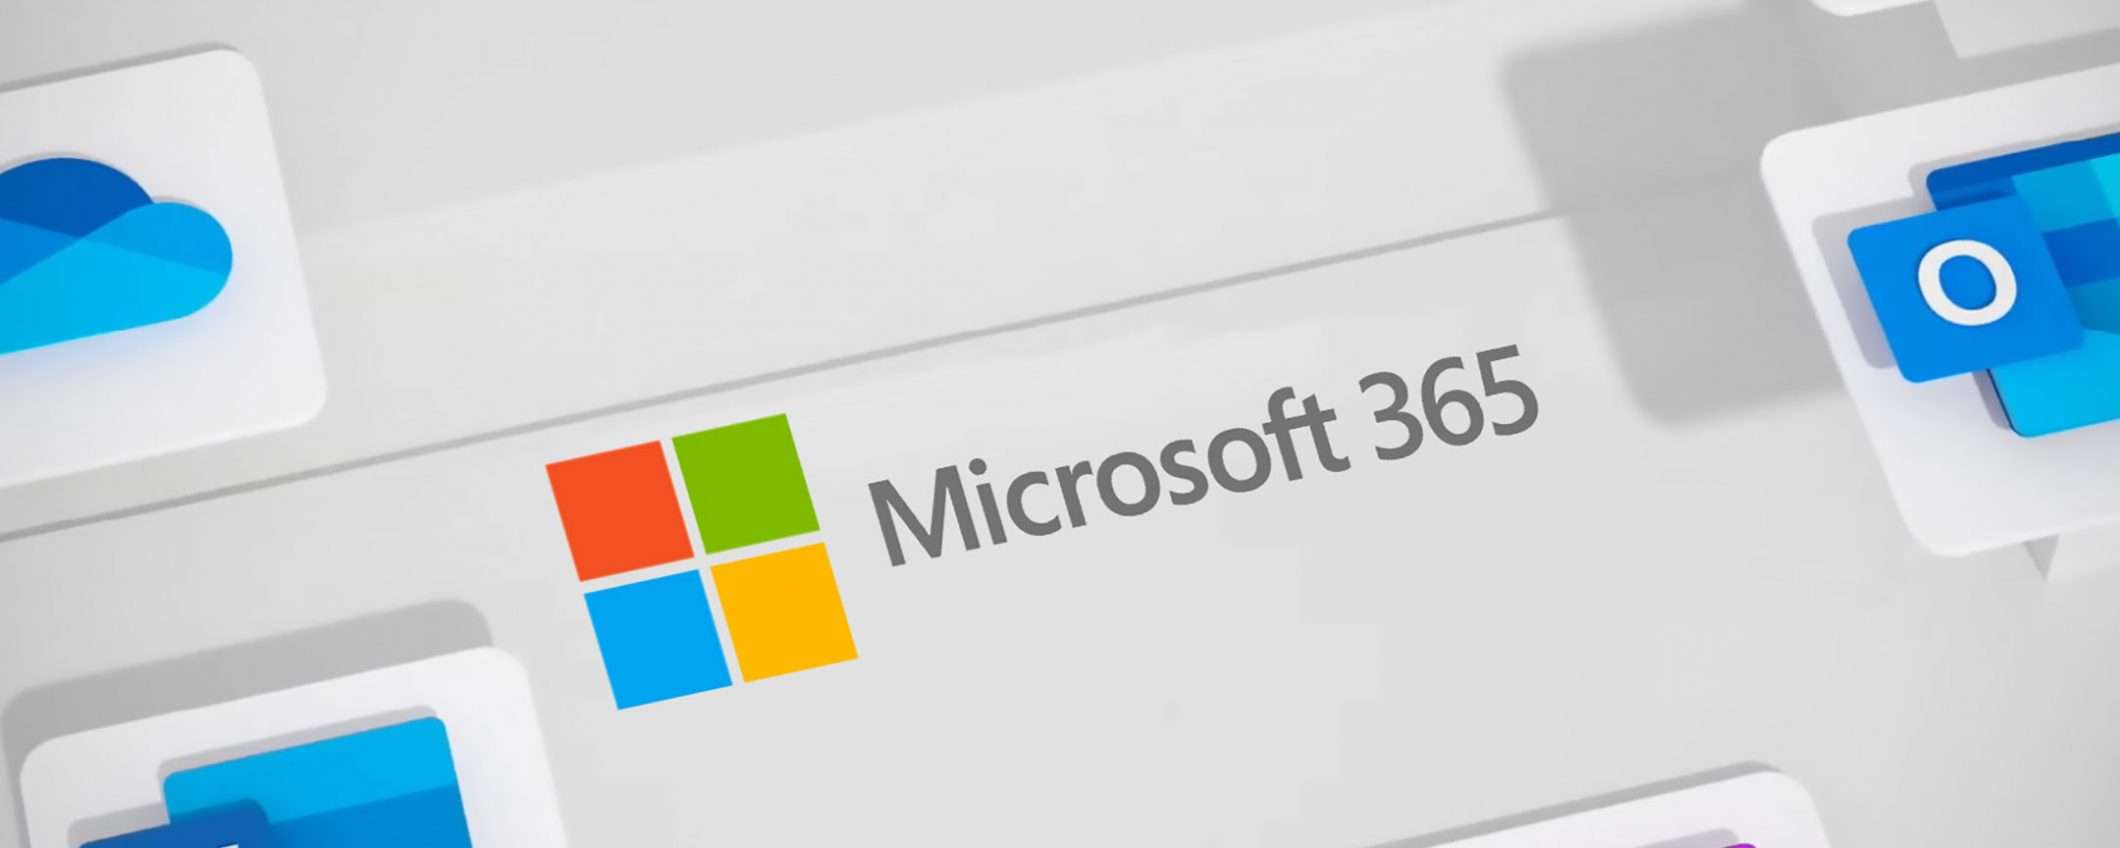 Gli abbonamenti Microsoft 365 in offerta su Amazon